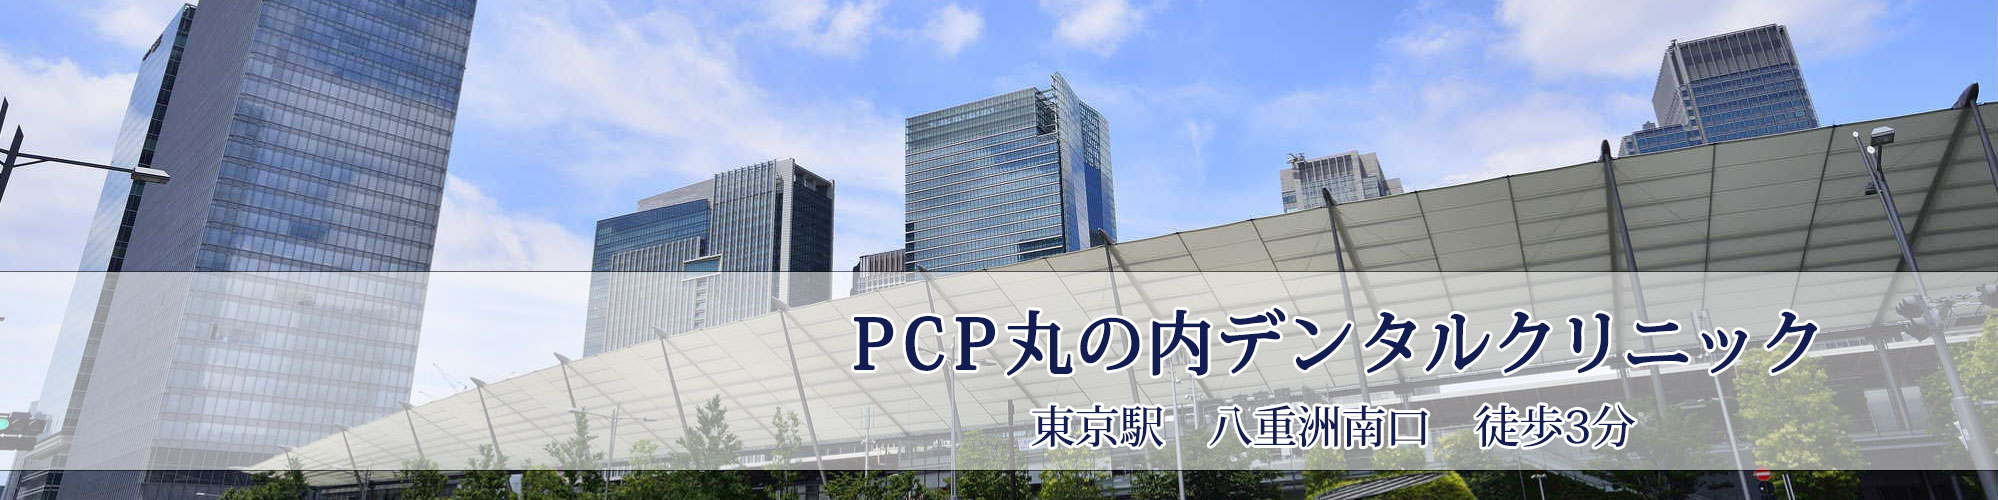 PCP丸の内デンタルクリニック 東京駅八重洲南口